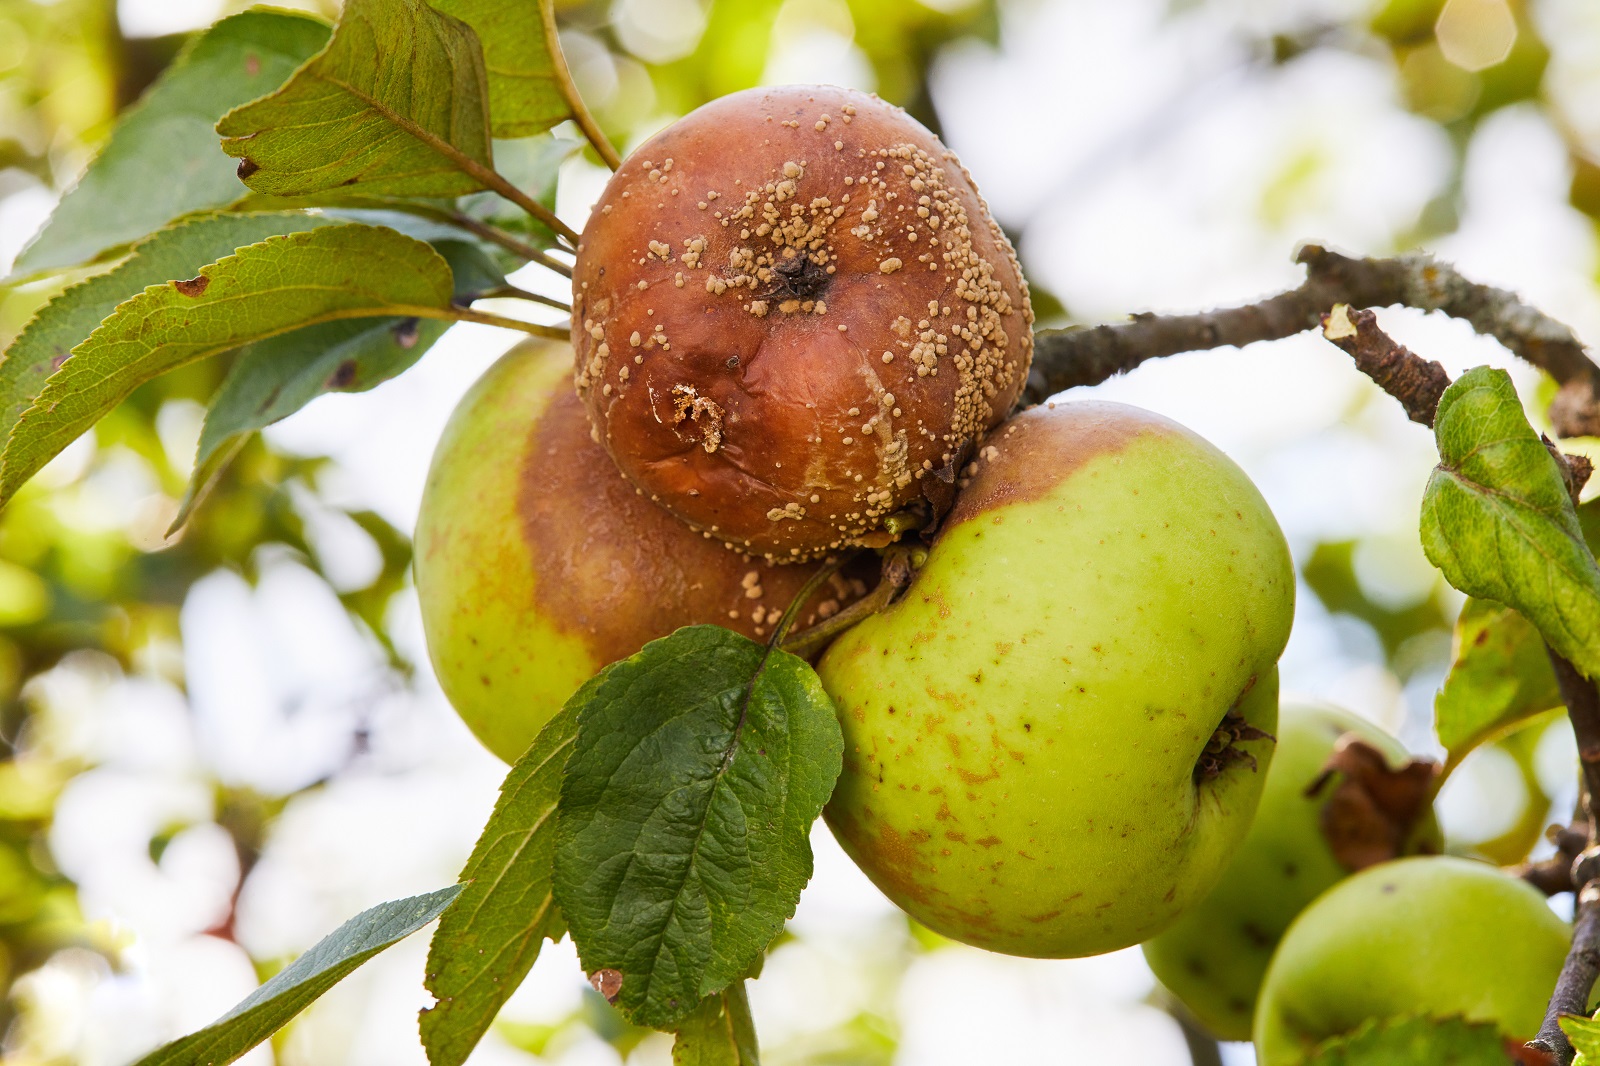 Pommes momifiées à cause de la moniliose. © Liudmila, Adobe Stock